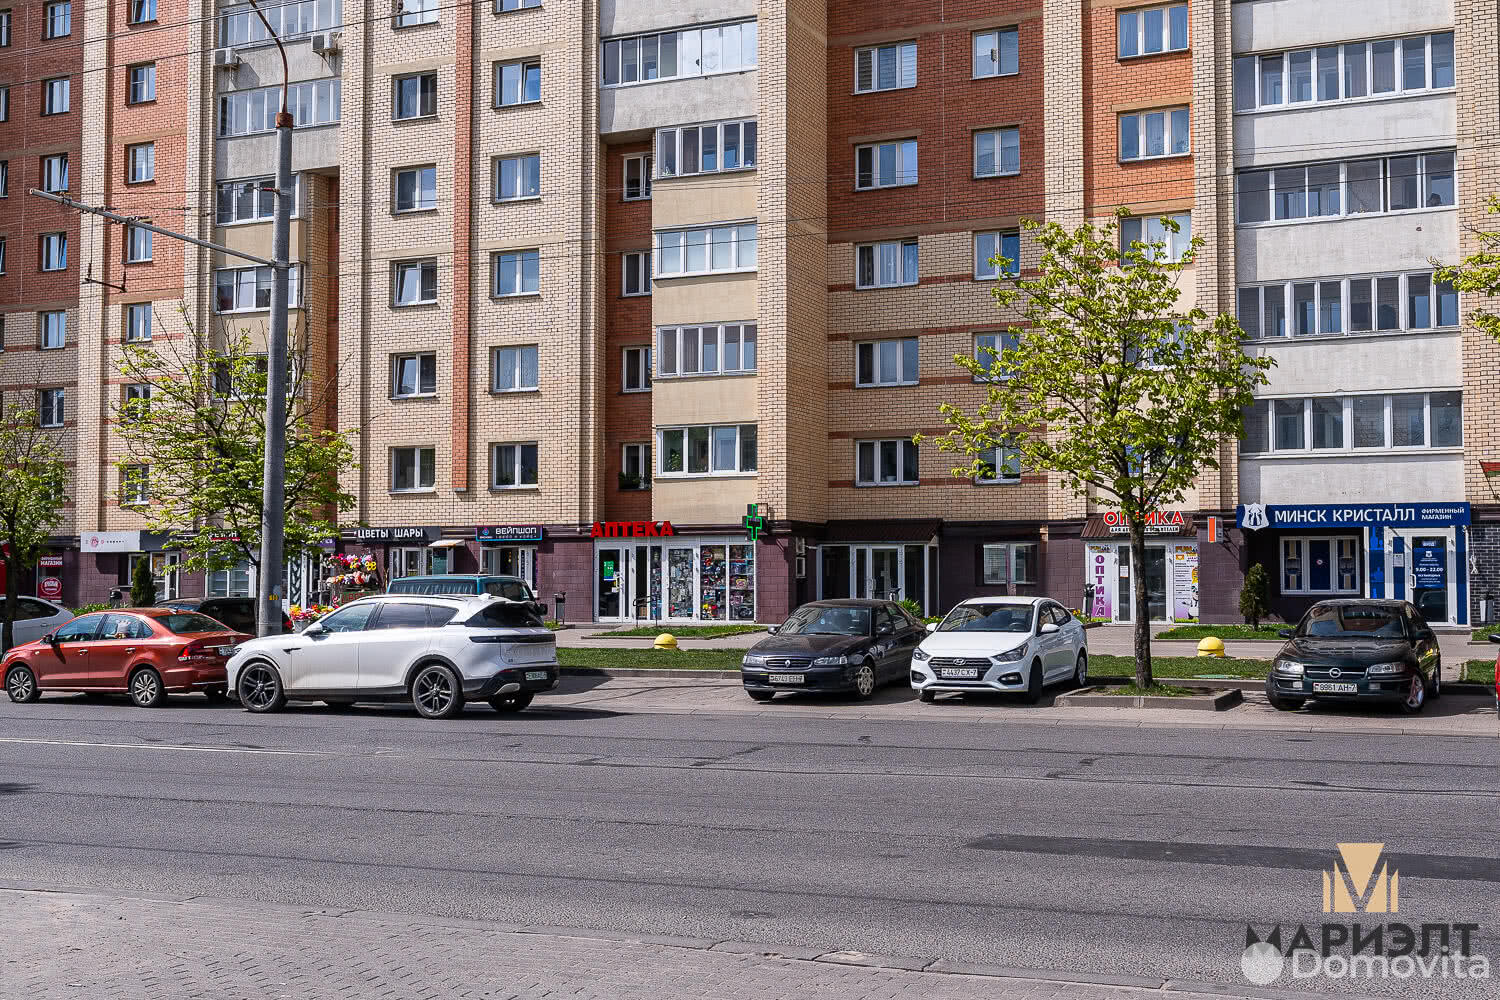 Аренда торгового помещения на ул. Бельского, д. 2 в Минске, 2129EUR, код 965001 - фото 5